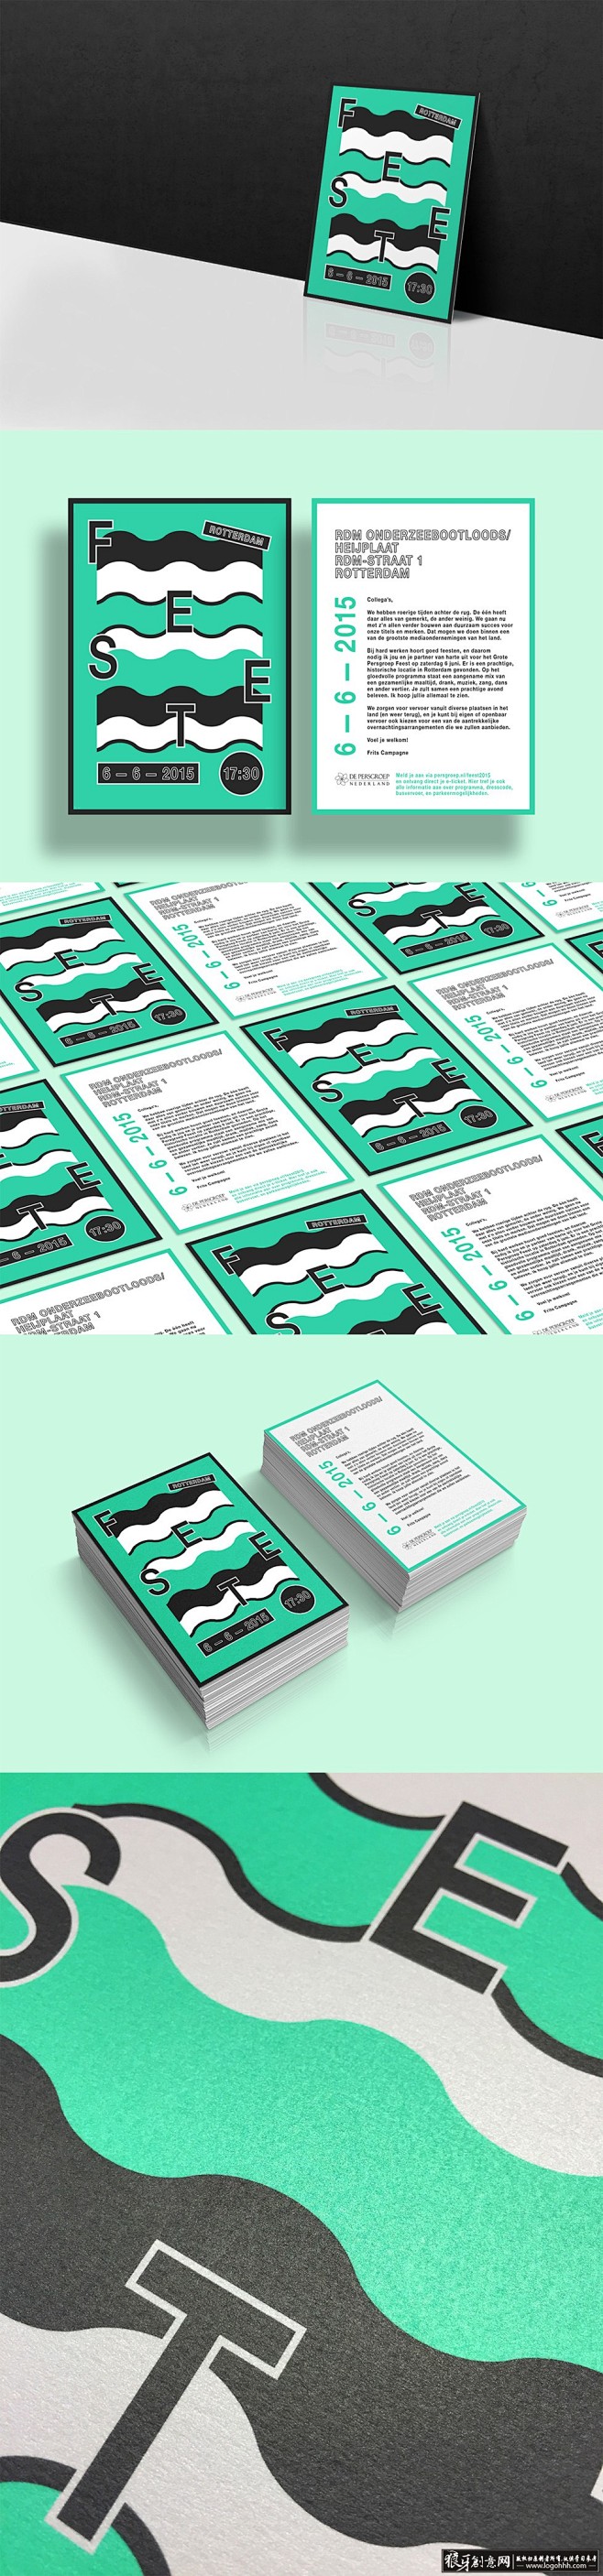 创意画册 水绿色画册封面设计 高端图形设...